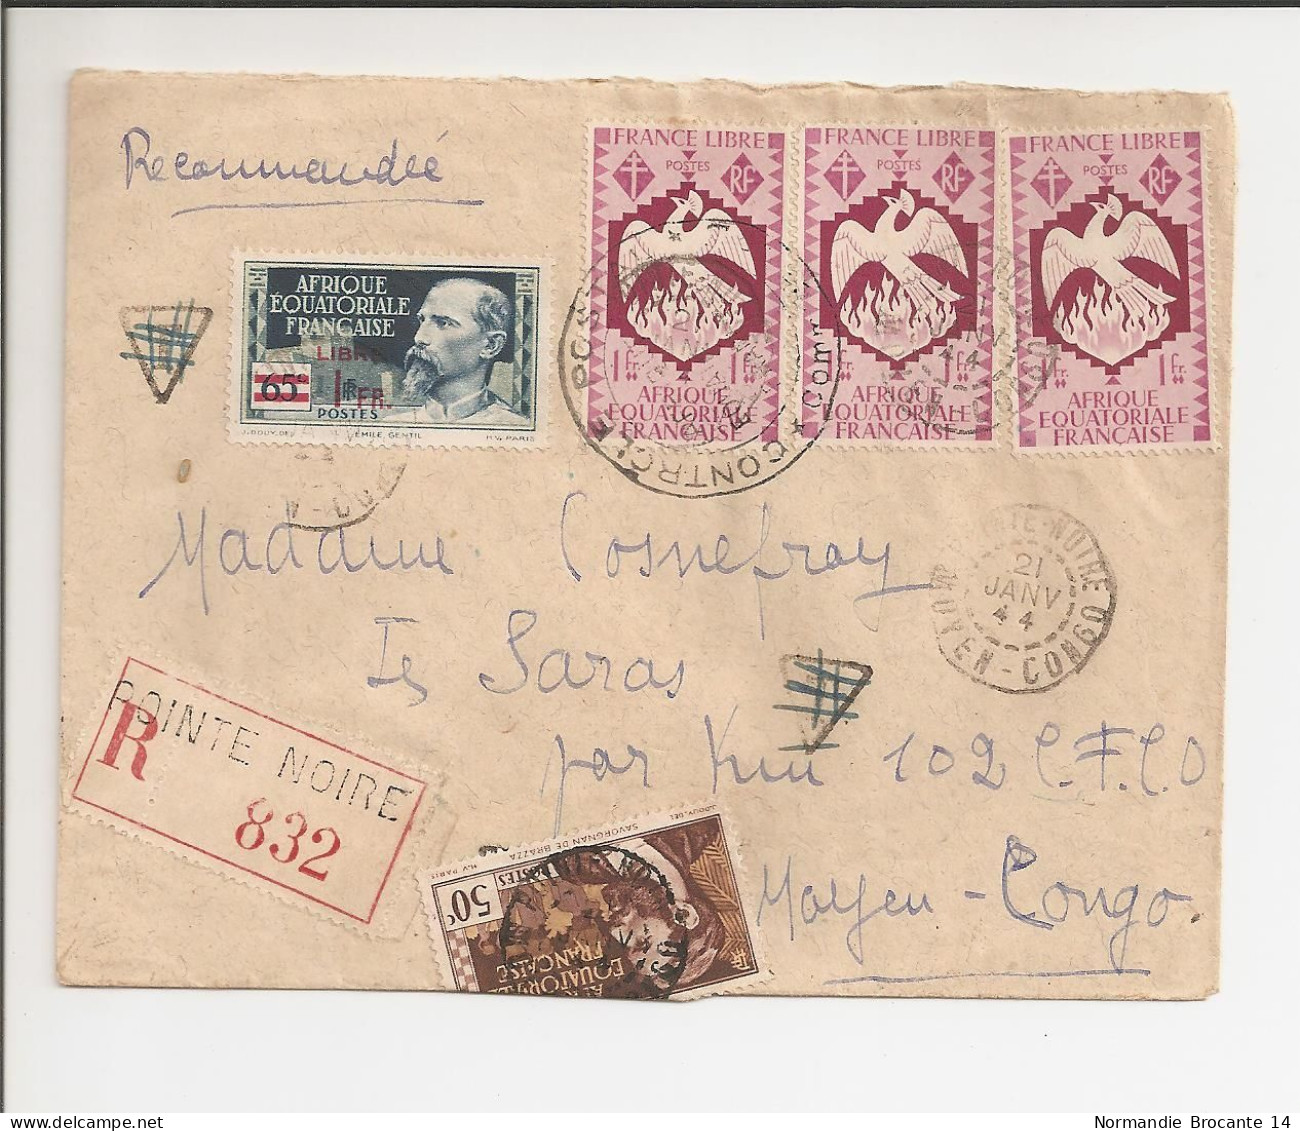 Lettre Recommandée AEF (Moyen Congo) Janvier 1944 - Timbre AEF France Libre - Lettres & Documents